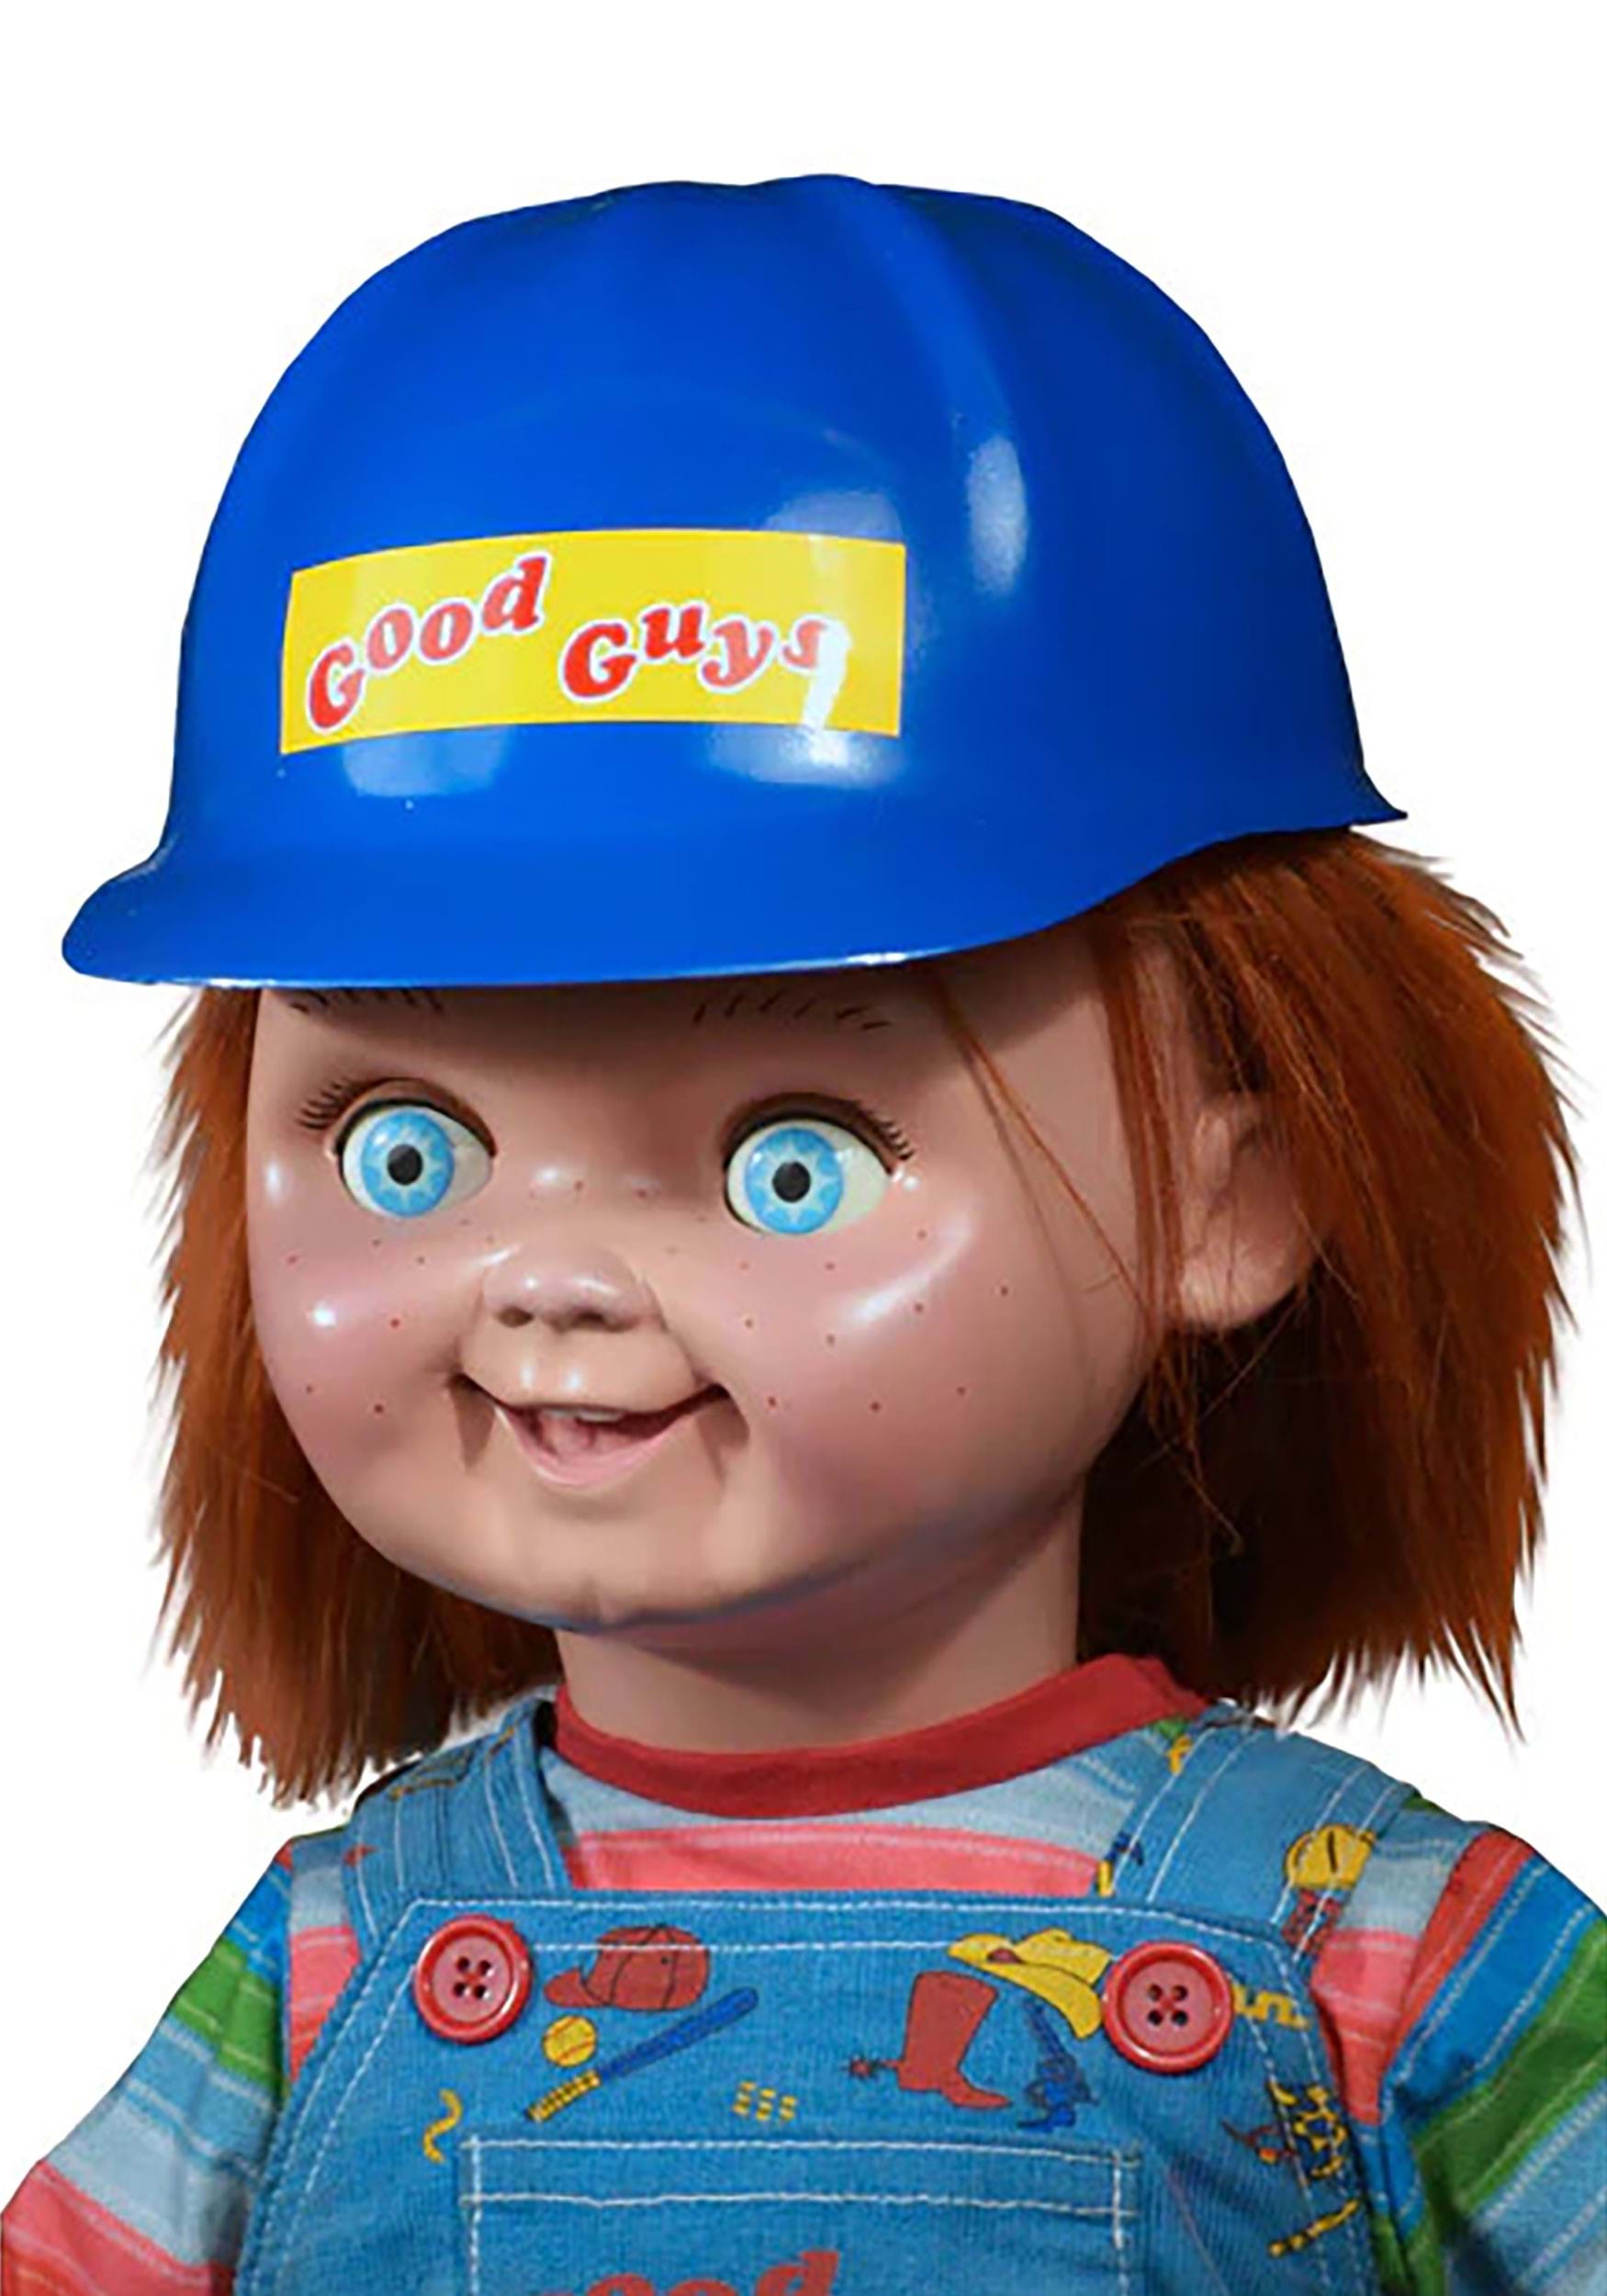 Trick or Treat Studios Childs Play II Good Guys Construction Helmet Prop